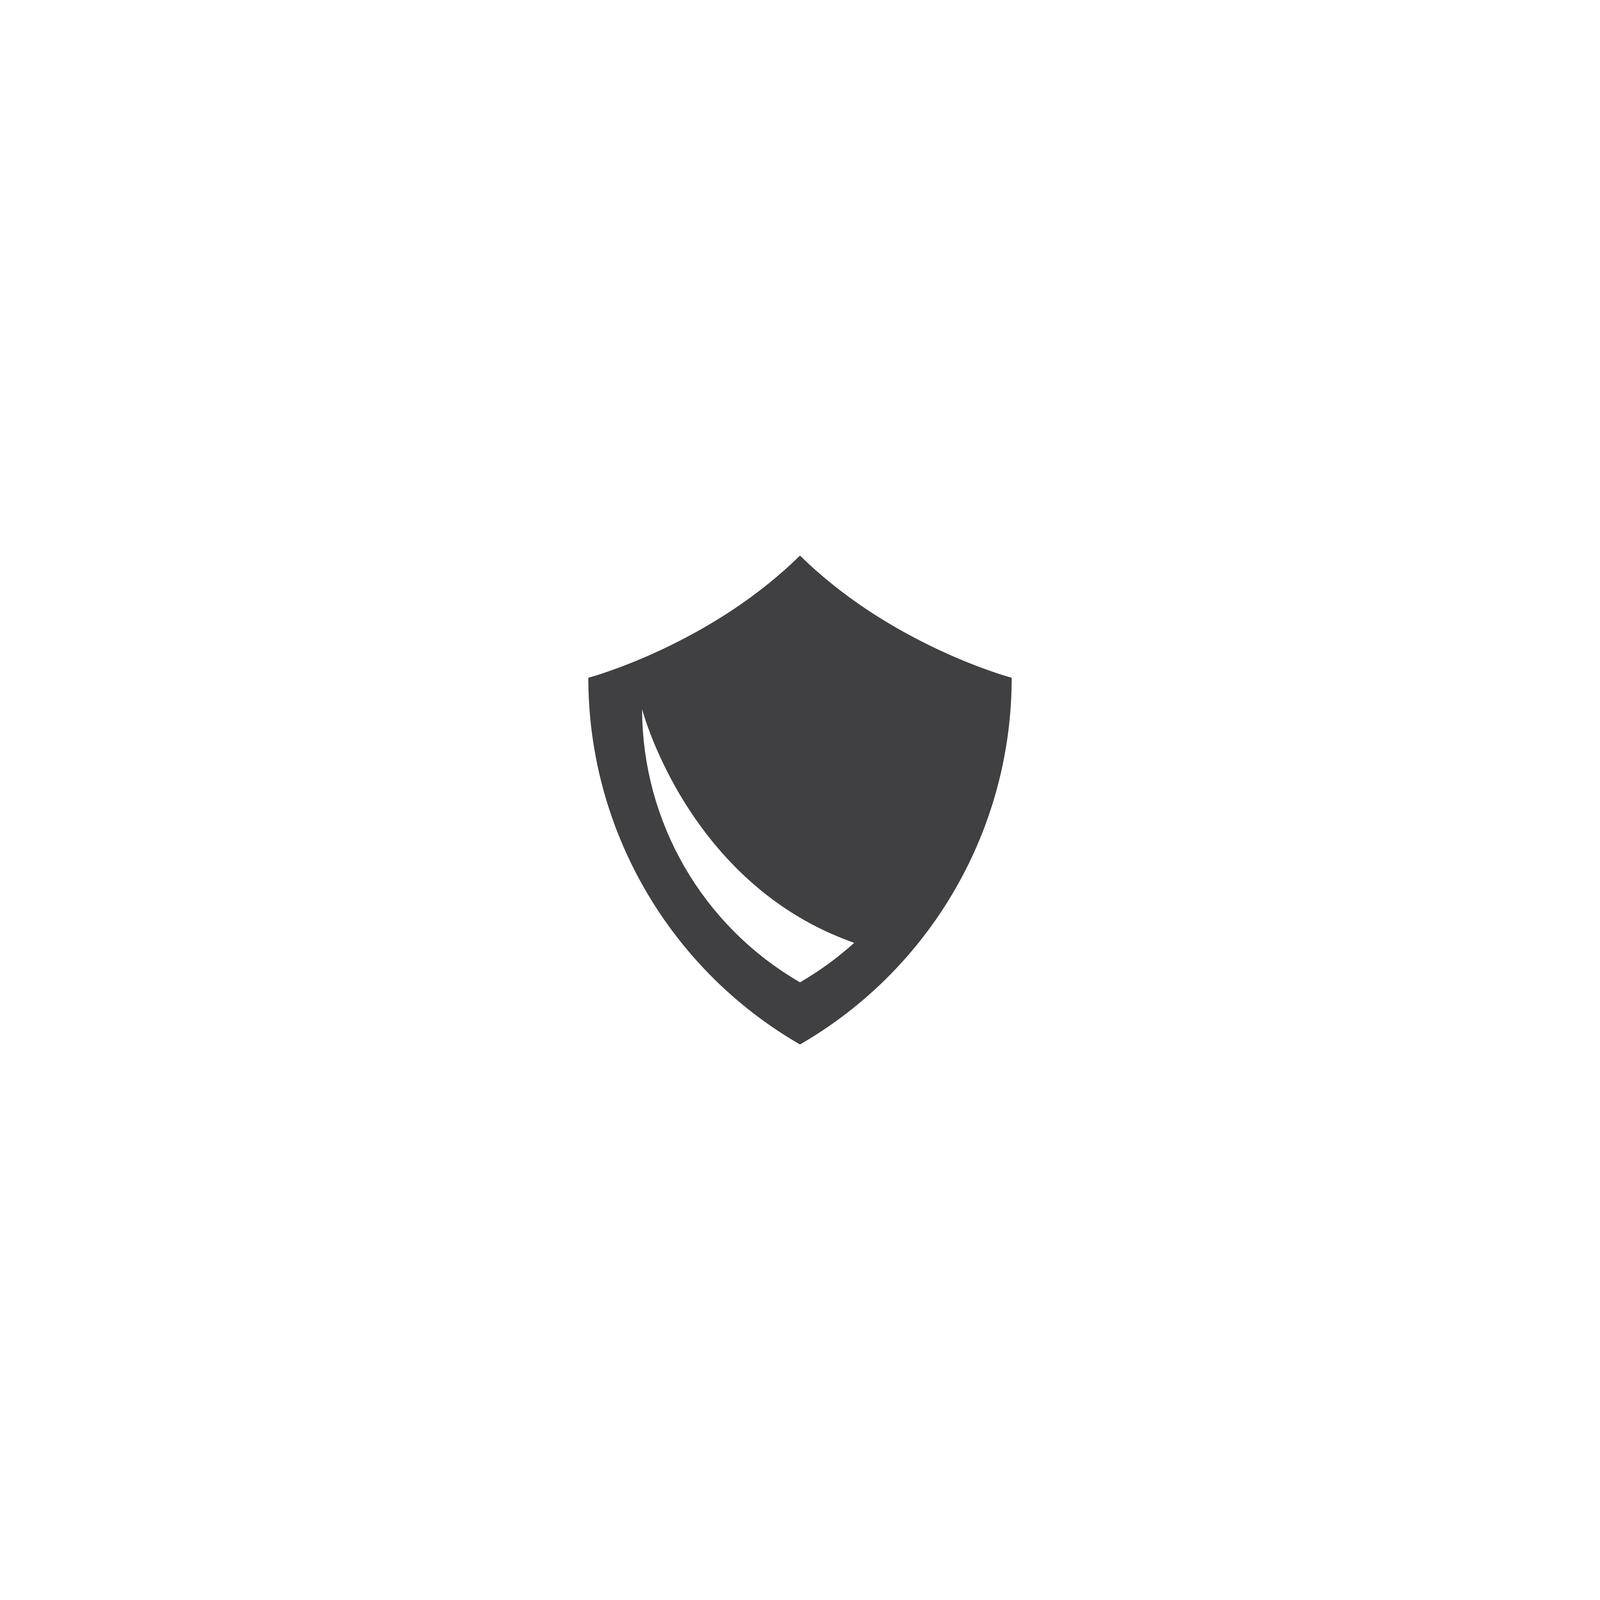 Shield logo template vector illustration